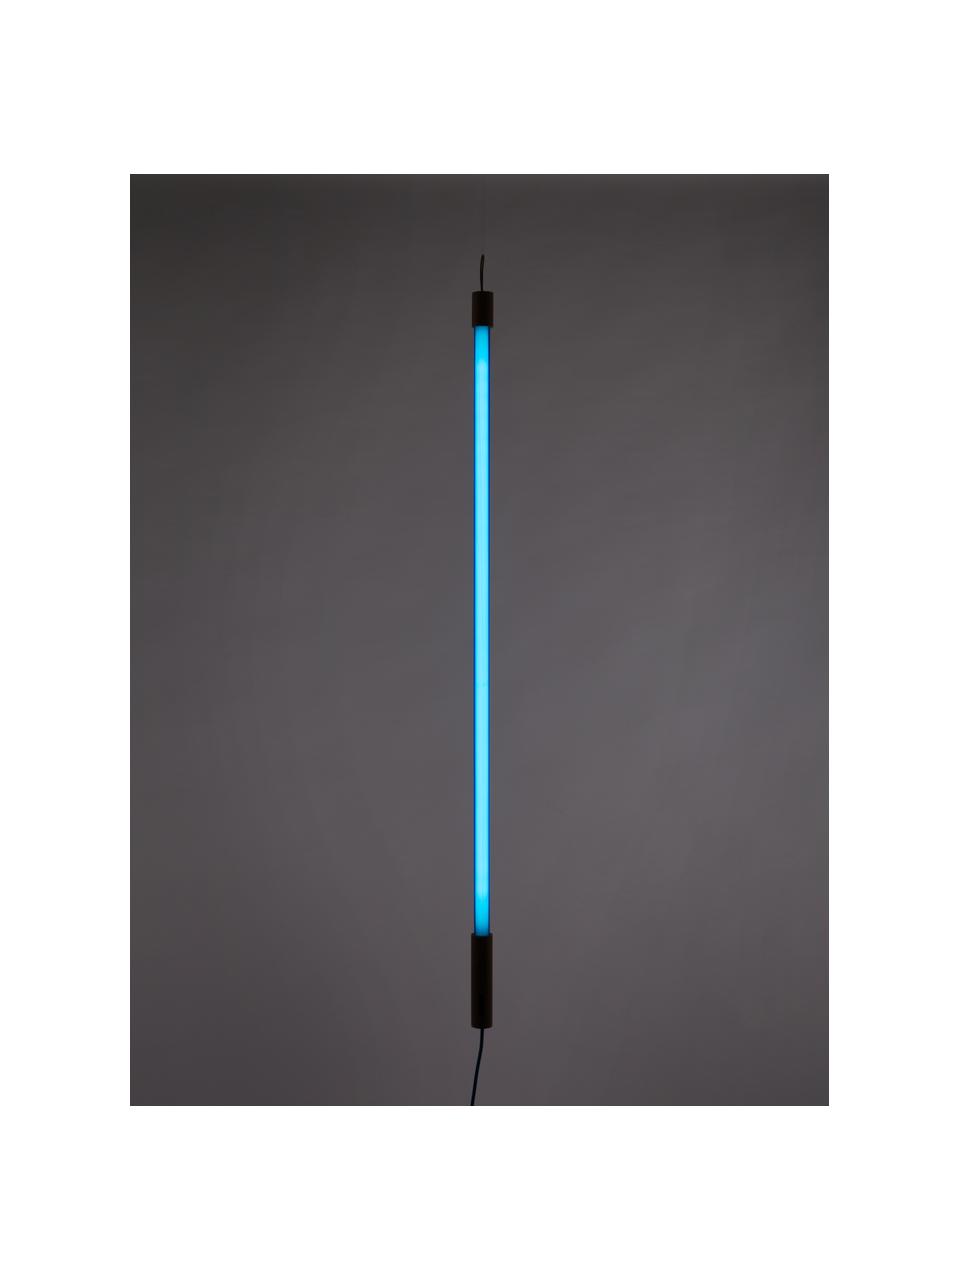 Nástenné LED svietidlo Linea, Modrá, Ø 4 x V 135 cm